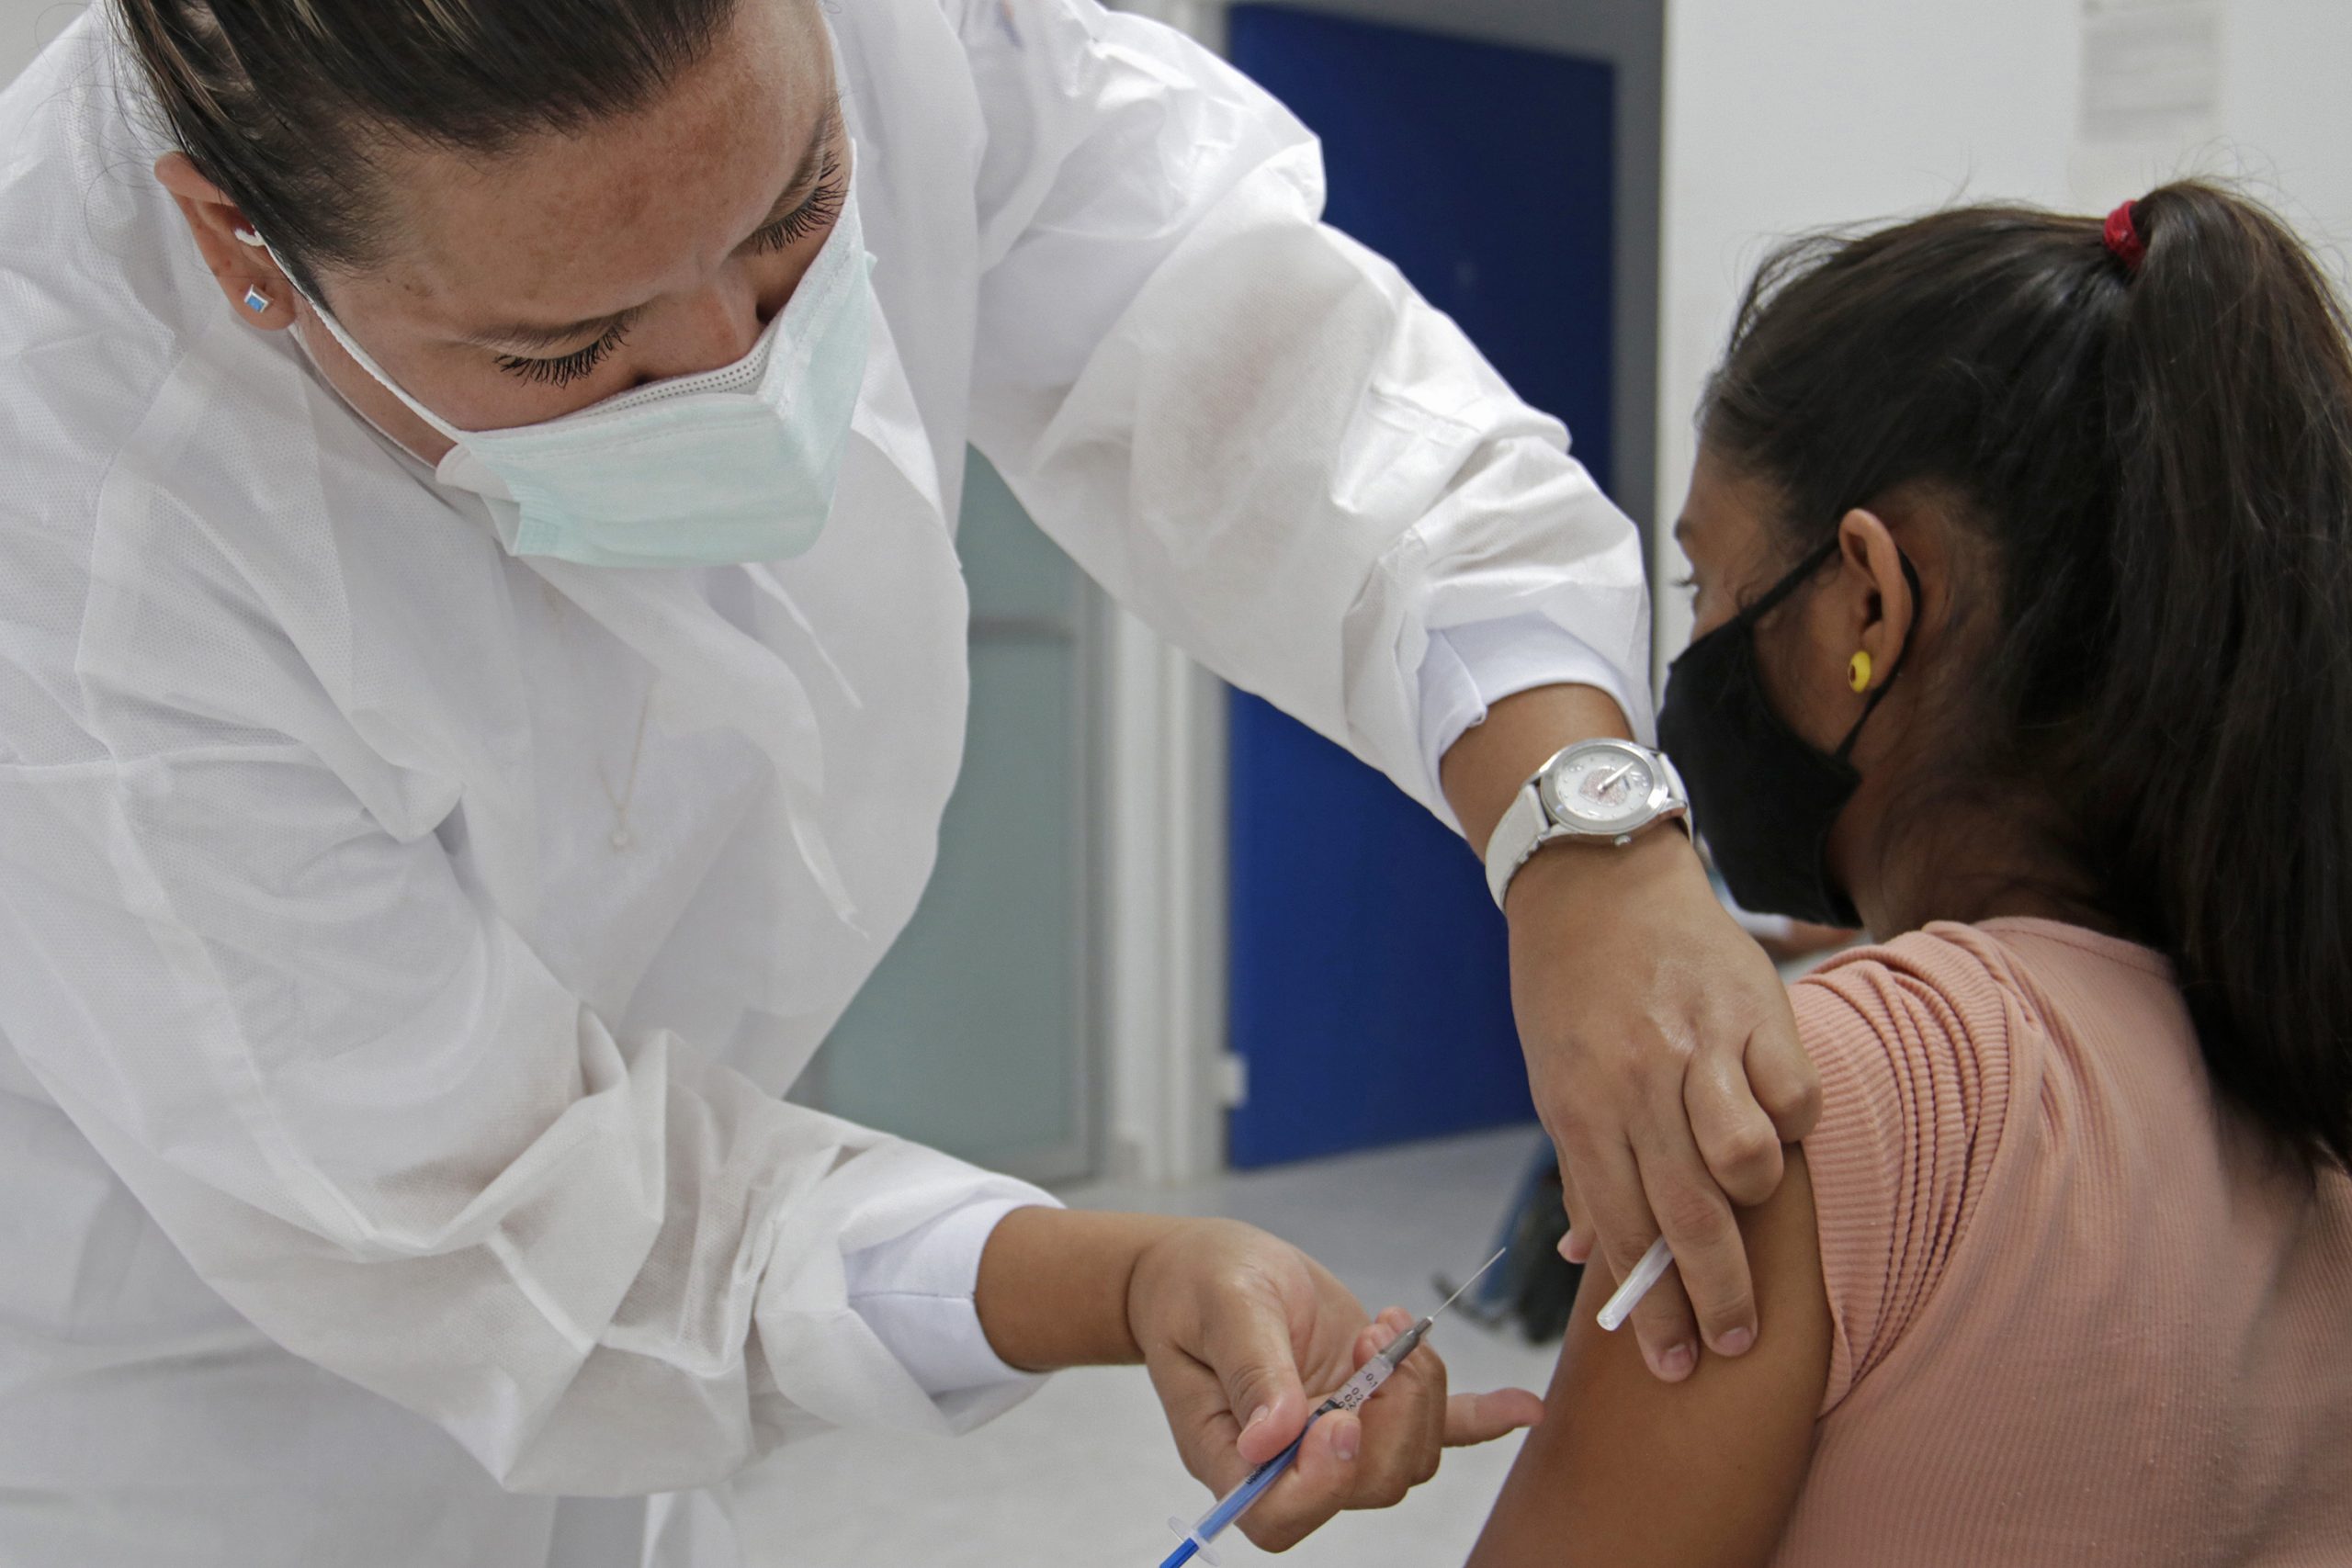 PRI tramitará amparos para vacunar a menores contra Covid-19